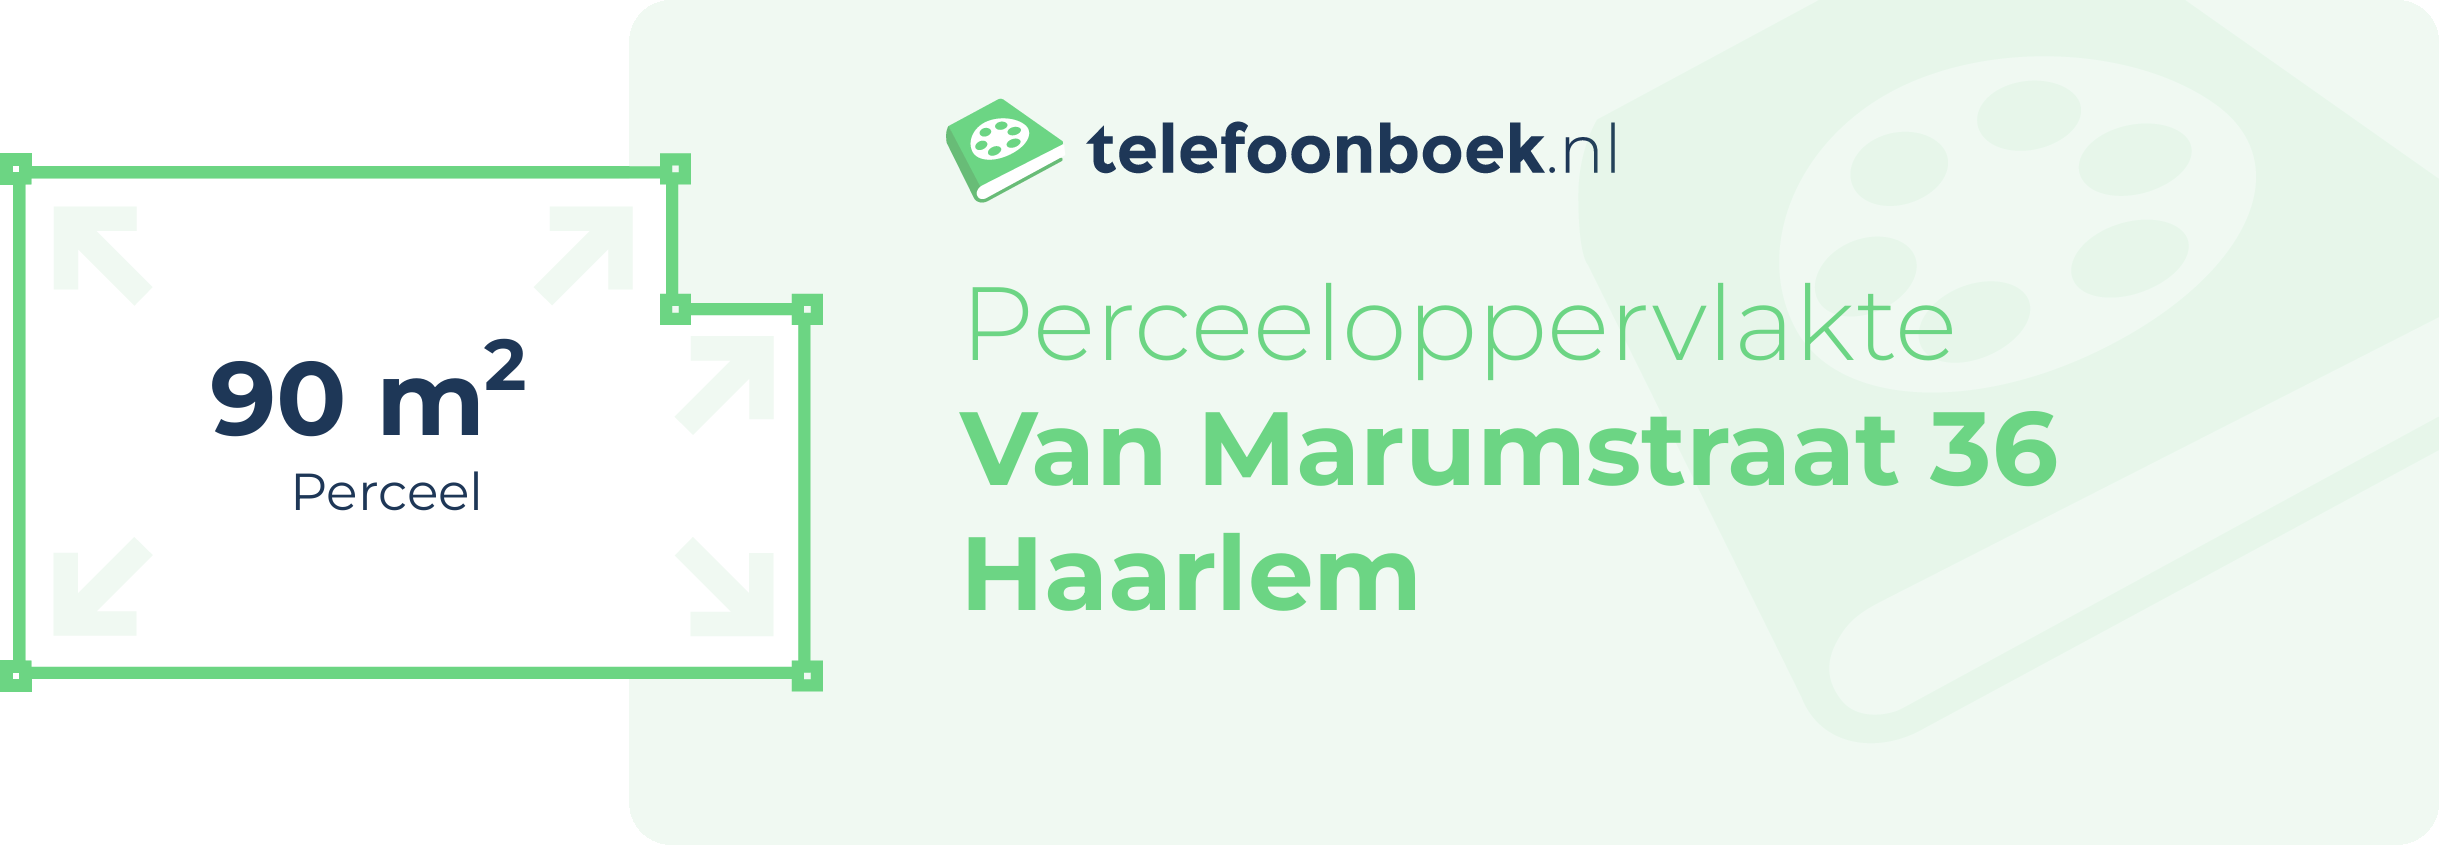 Perceeloppervlakte Van Marumstraat 36 Haarlem